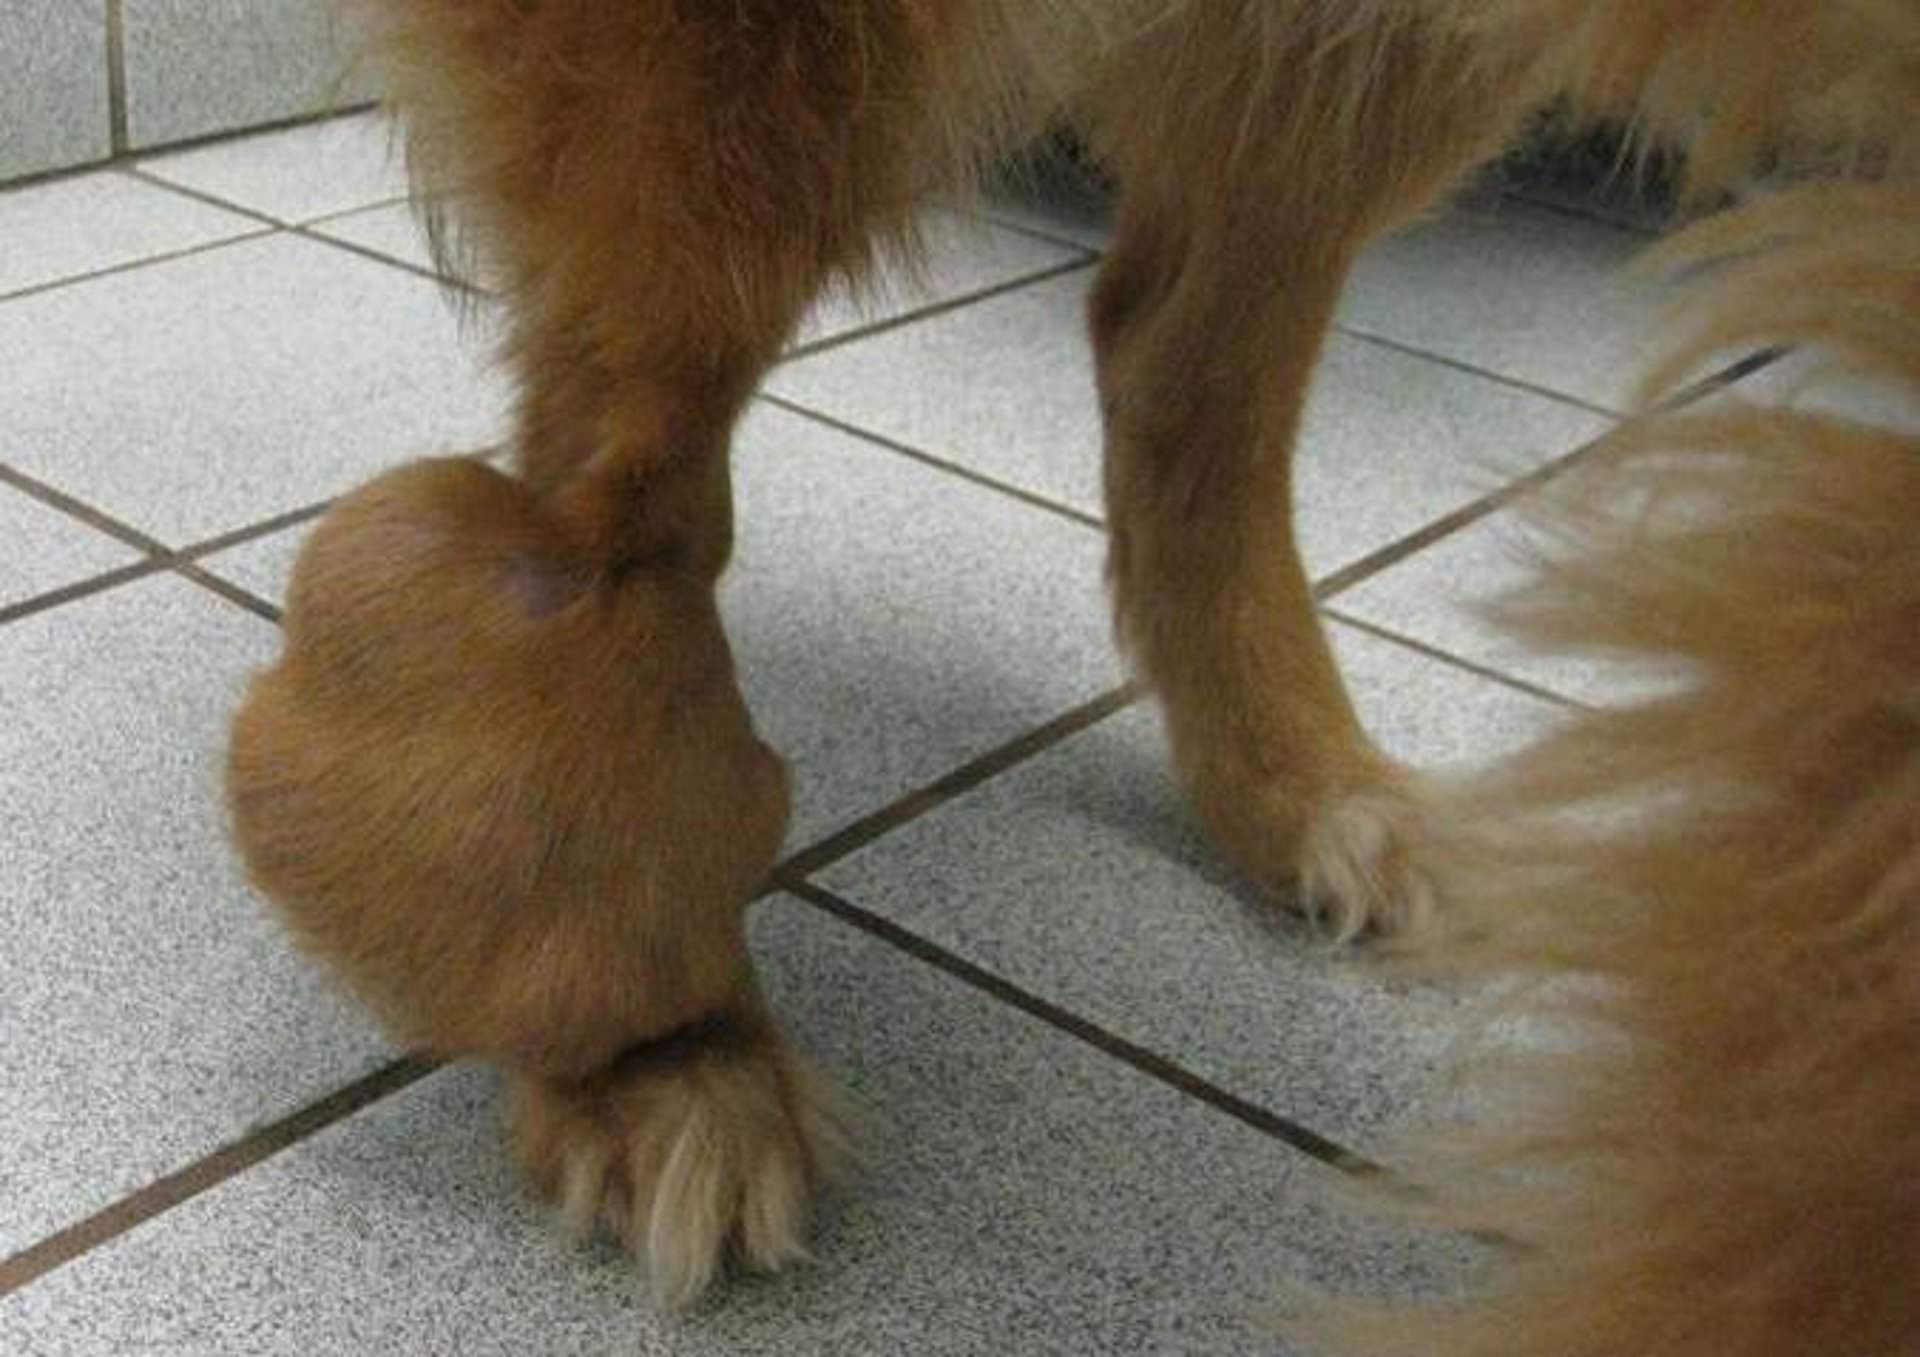 Hemangiopericytoma, right hind leg, mixed-breed dog